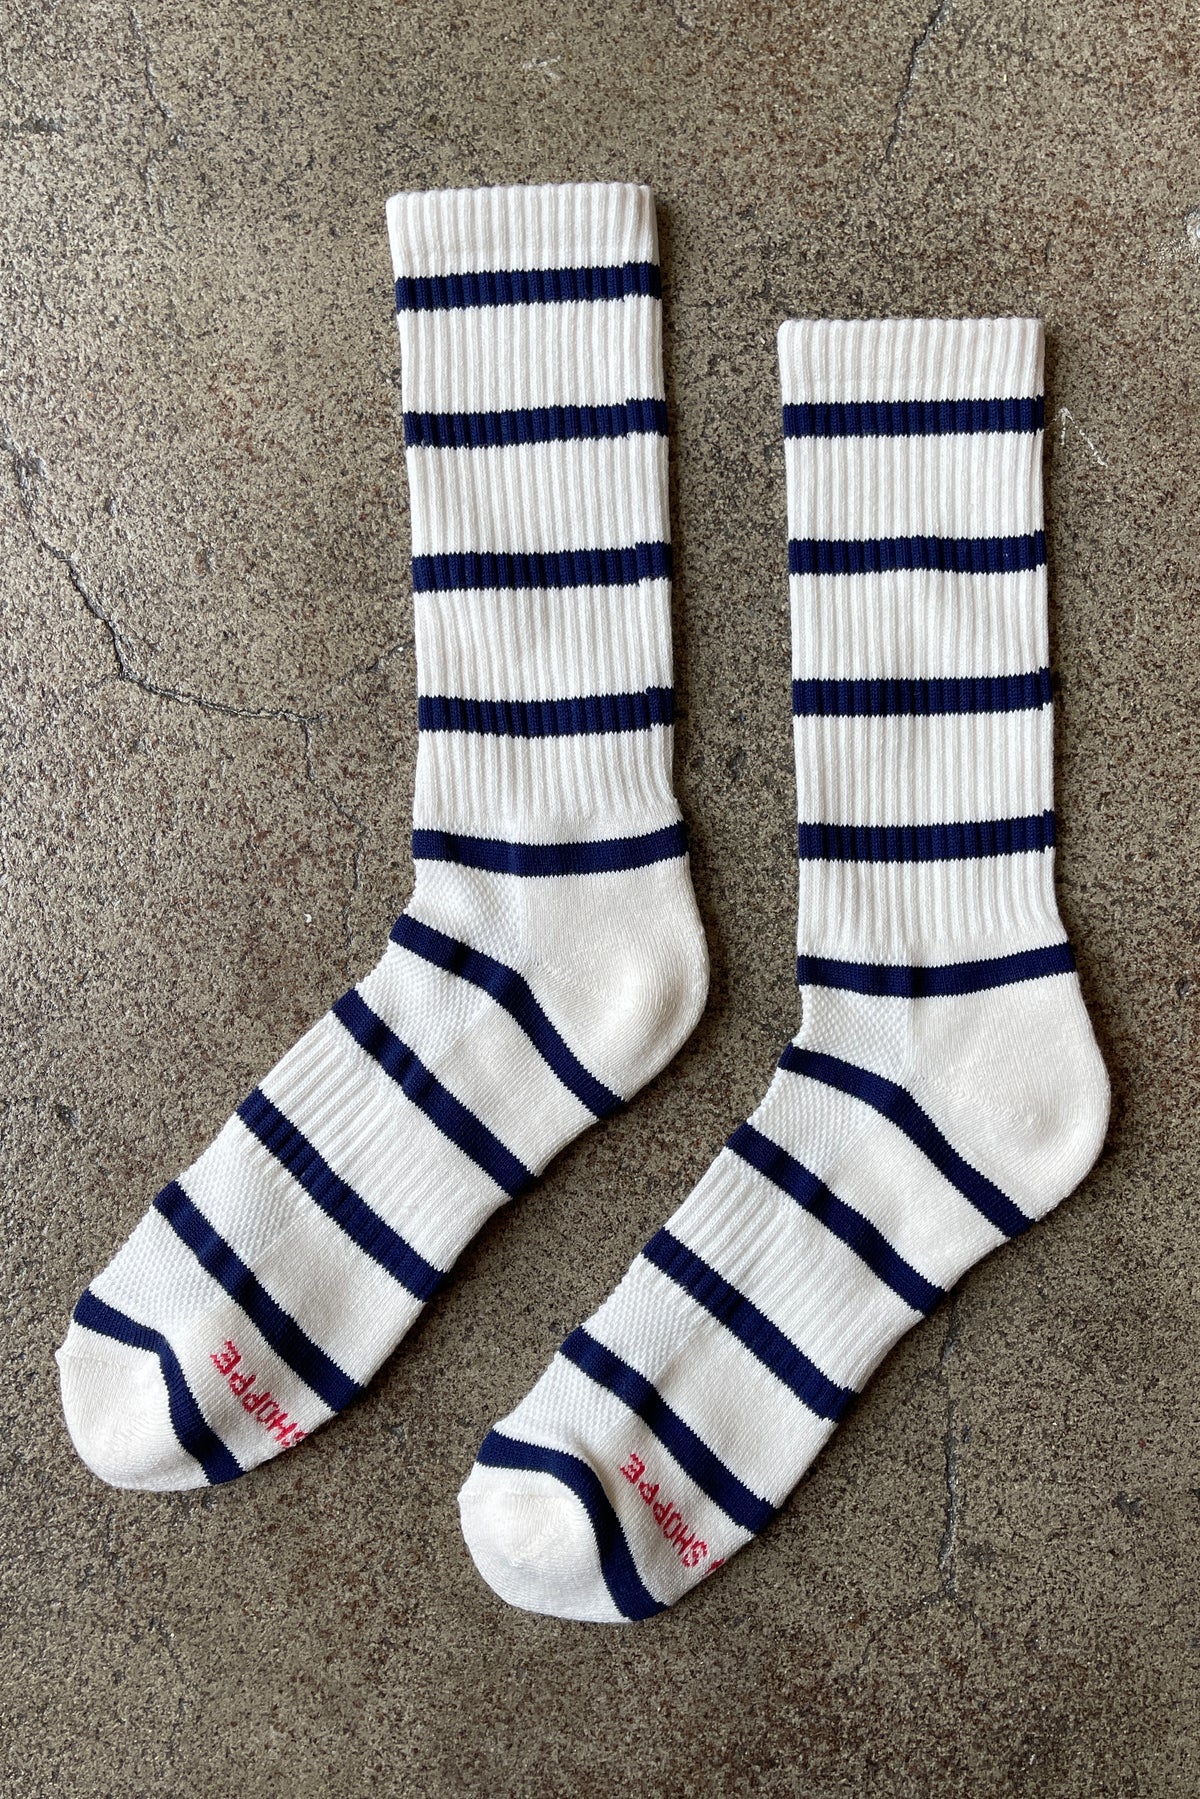 Extended Boyfriend Socks in Sailor Stripe by Le Bon Shoppe